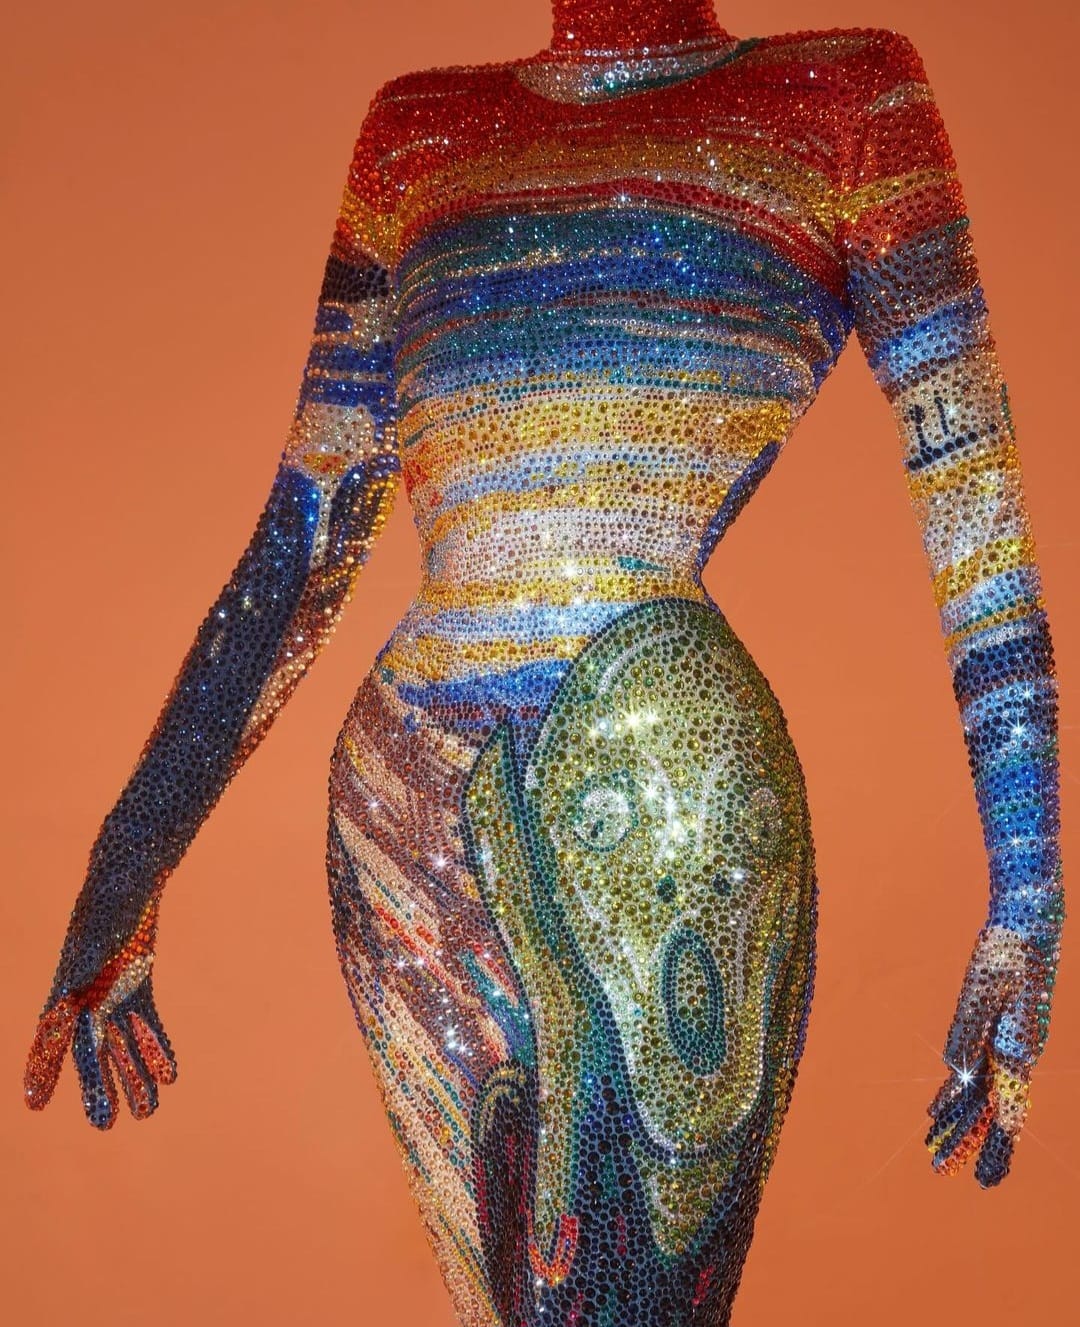 Arte e ModaRecentemente, viralizou nas redes uma imagem saída da passarela do Ru Paul’s Drag Race –a dragqueen Gottmik, para atender ao tema de um dos desfiles, apareceu trajando um belíssimo vestido com a imagem do famoso quadro “O Grito”, de Edvard Munch de 1893.